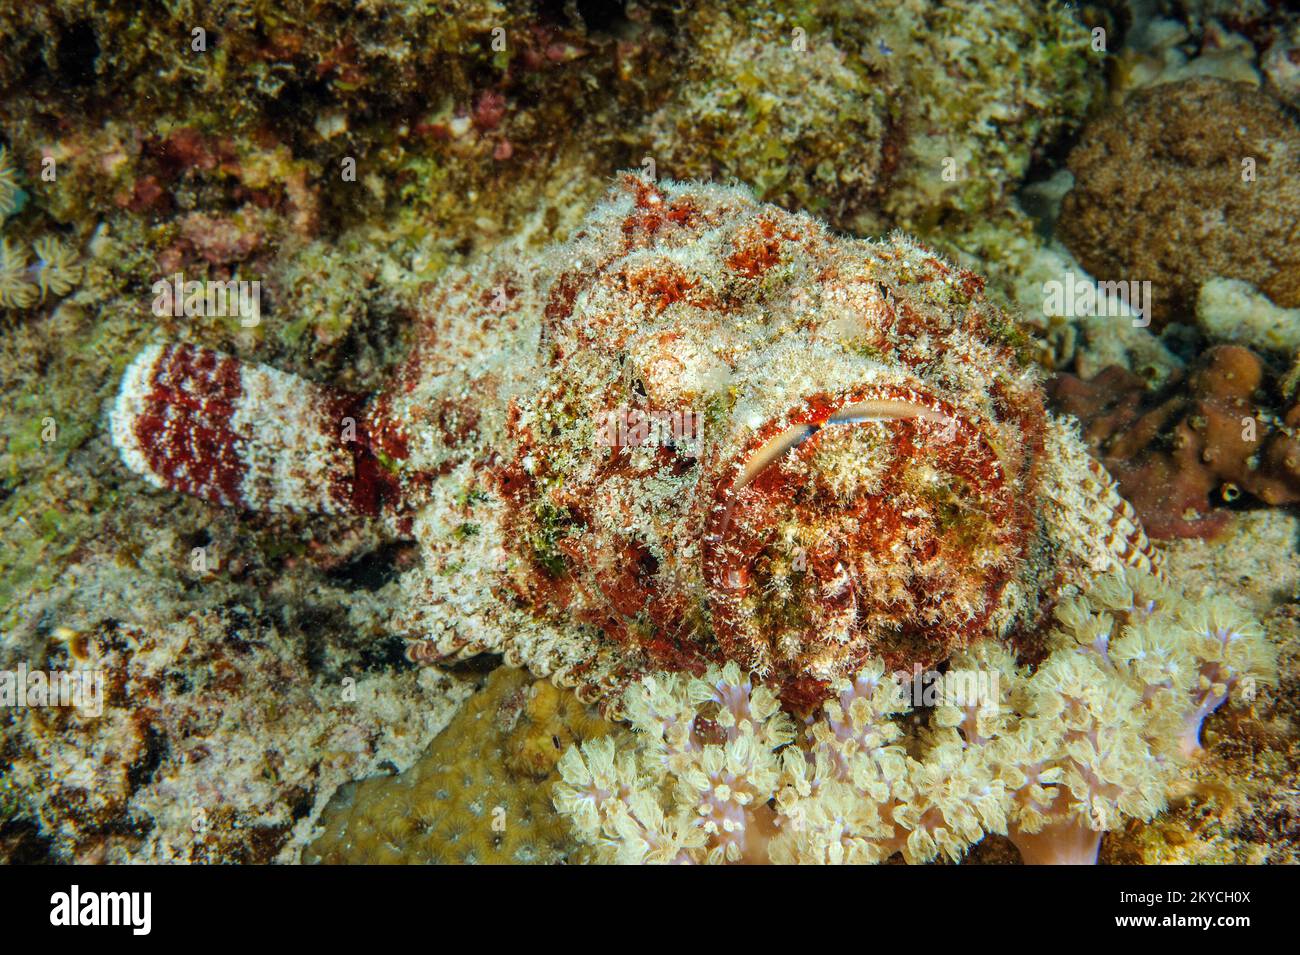 Le corégone venimeux animal marin venimeux est le corégone de récif (Synanceia verrucosa) comme le corail en pierre dans le récif de corail qui se cache pour la proie regarde directement Banque D'Images